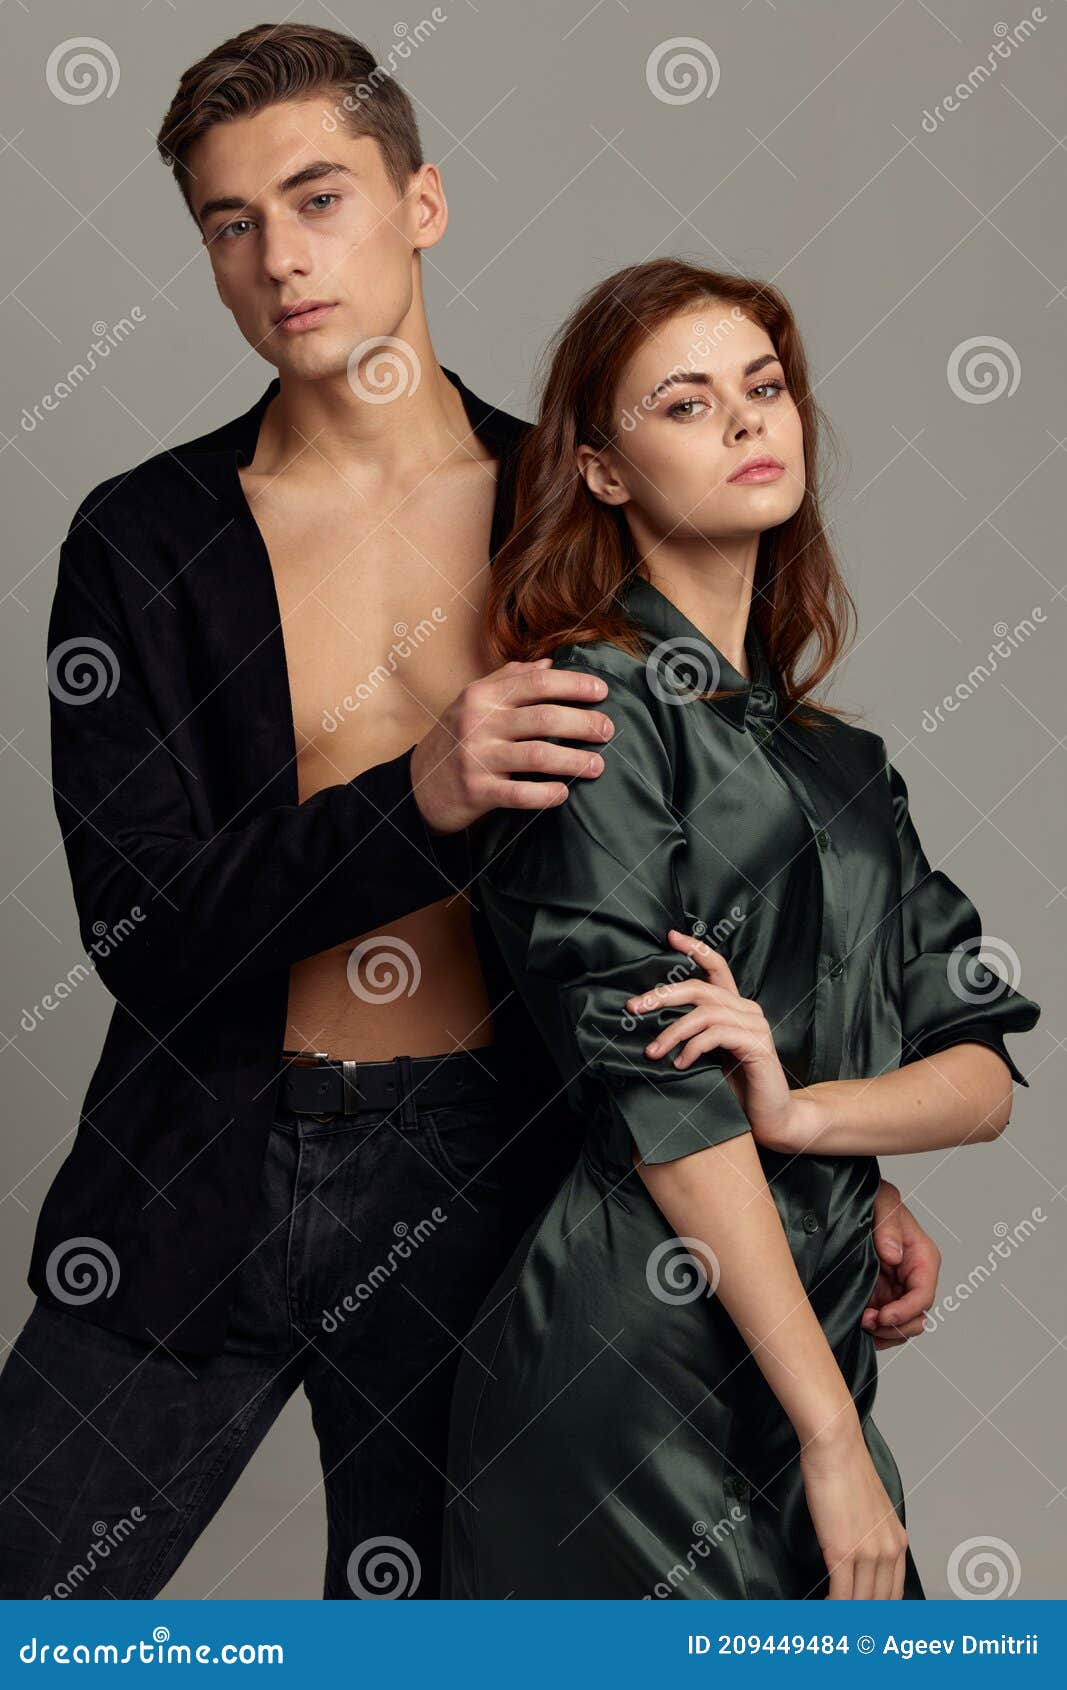 Hombres Y Mujeres Ropa De Moda Romance Estilo Atractivo Foto de archivo - Imagen de modelado, manera: 209449484